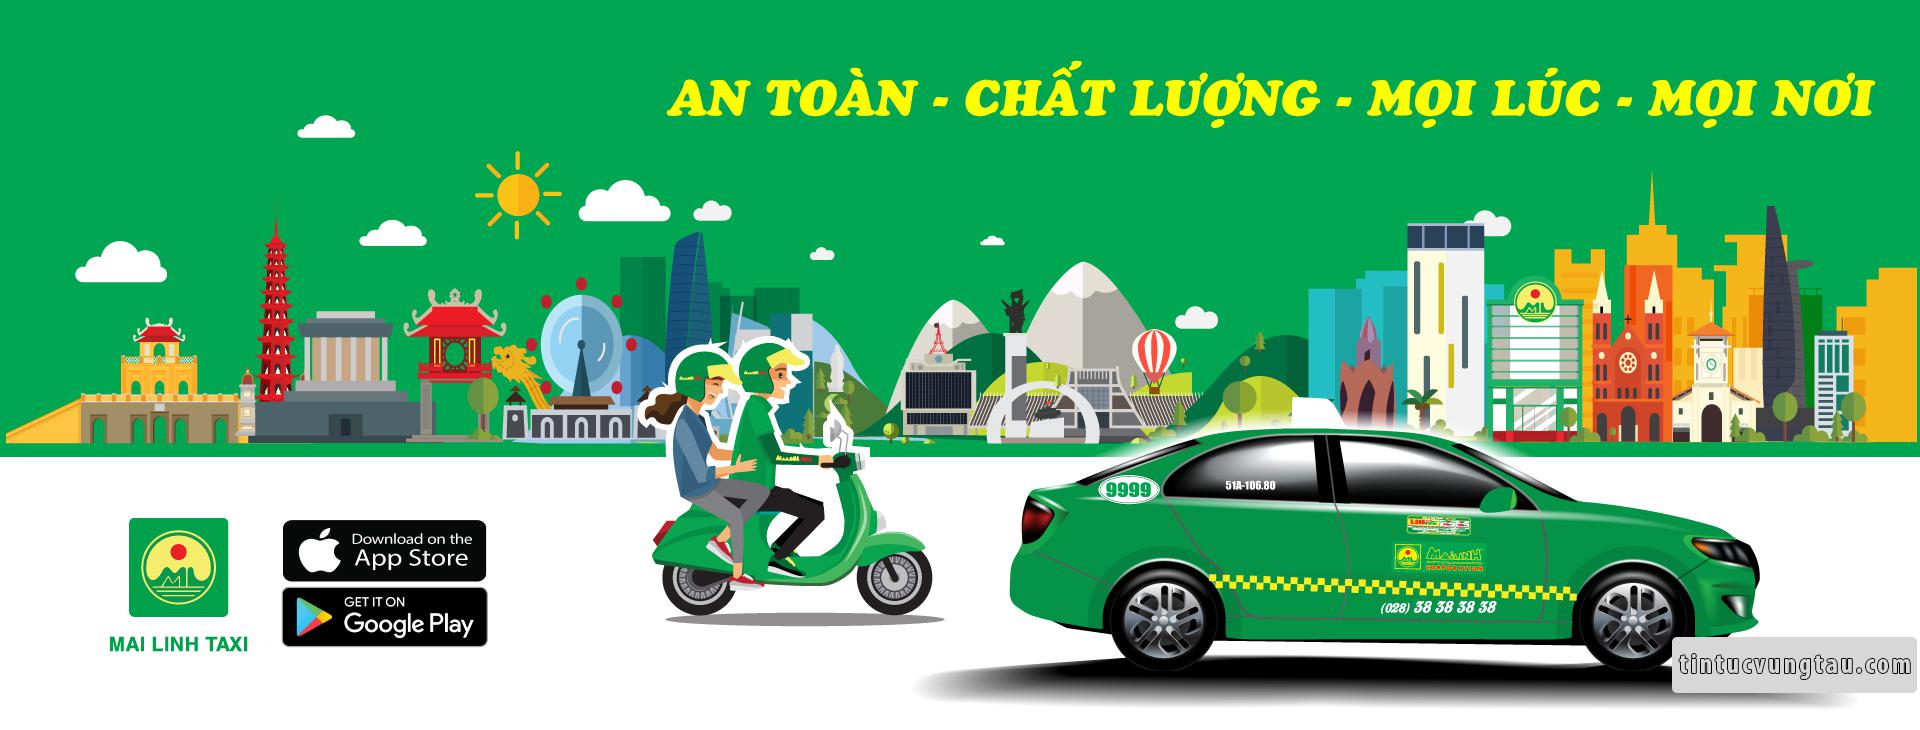 Taxi Mai Linh Vũng Tàu